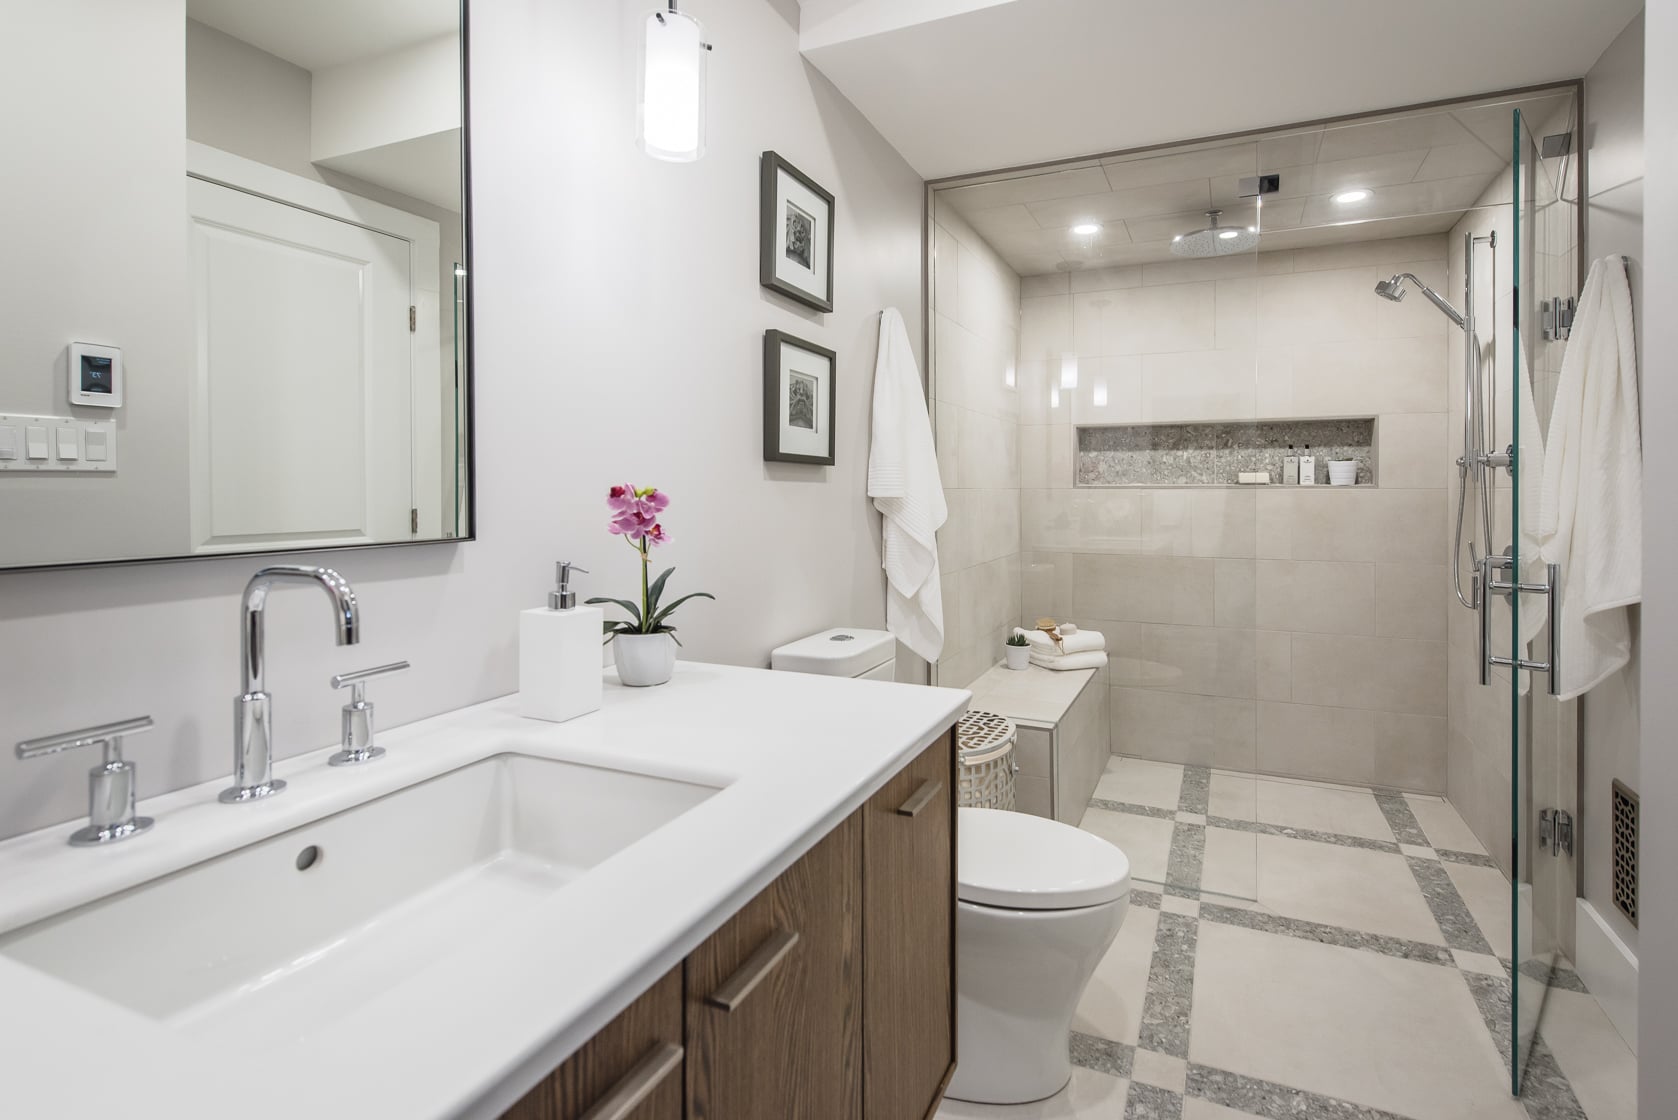 Luxurious Bathroom  Updates  POPSUGAR Home